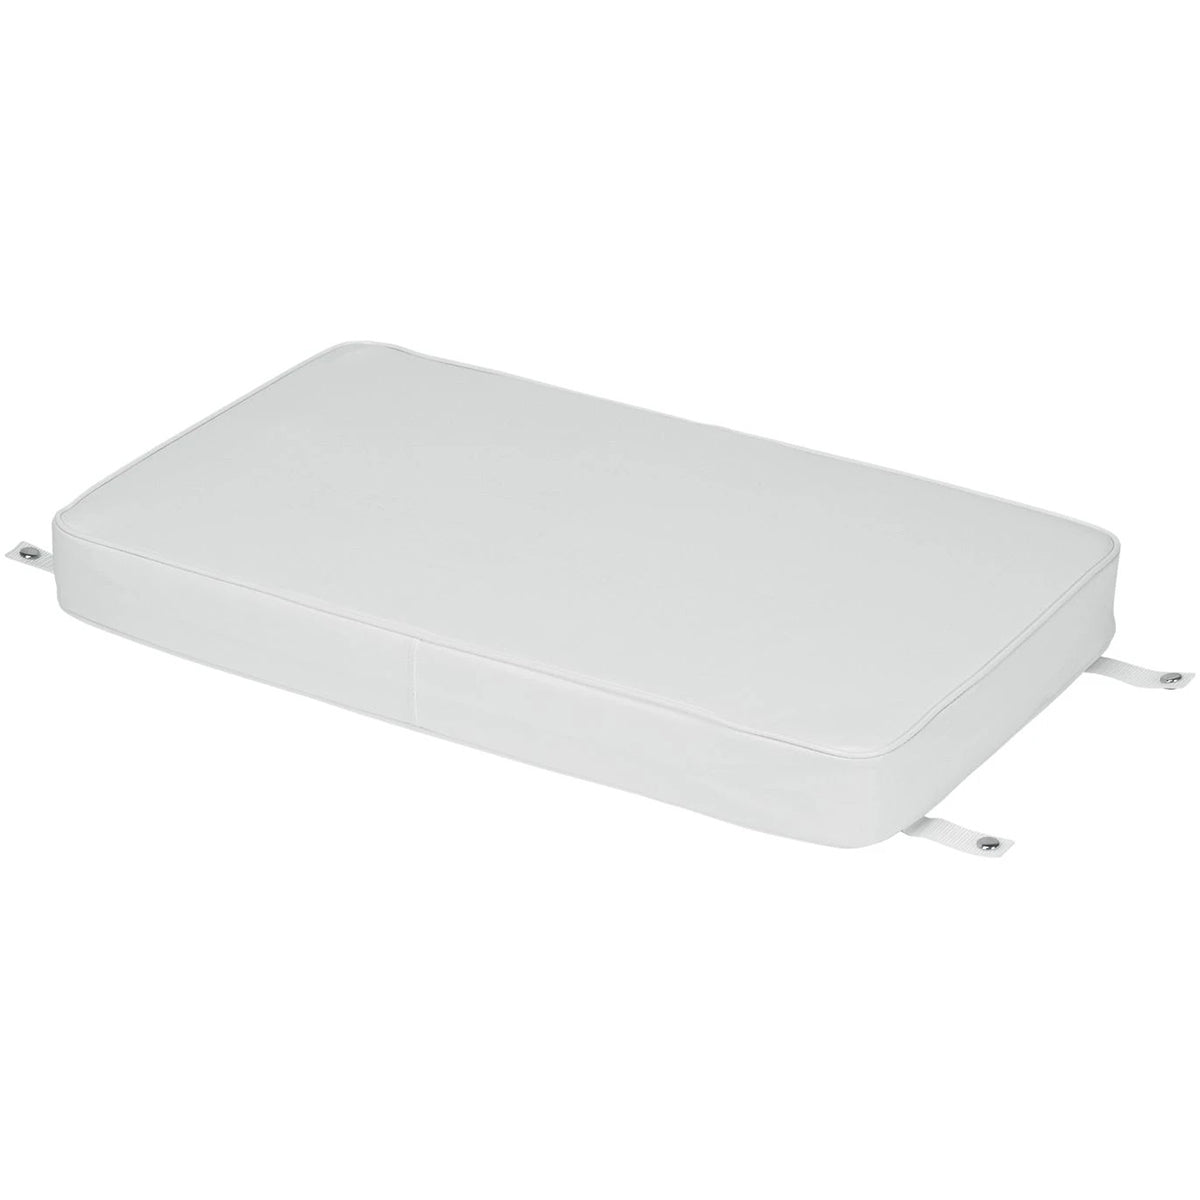 IGLOO Marine Cooler Cushion - White IGLOO